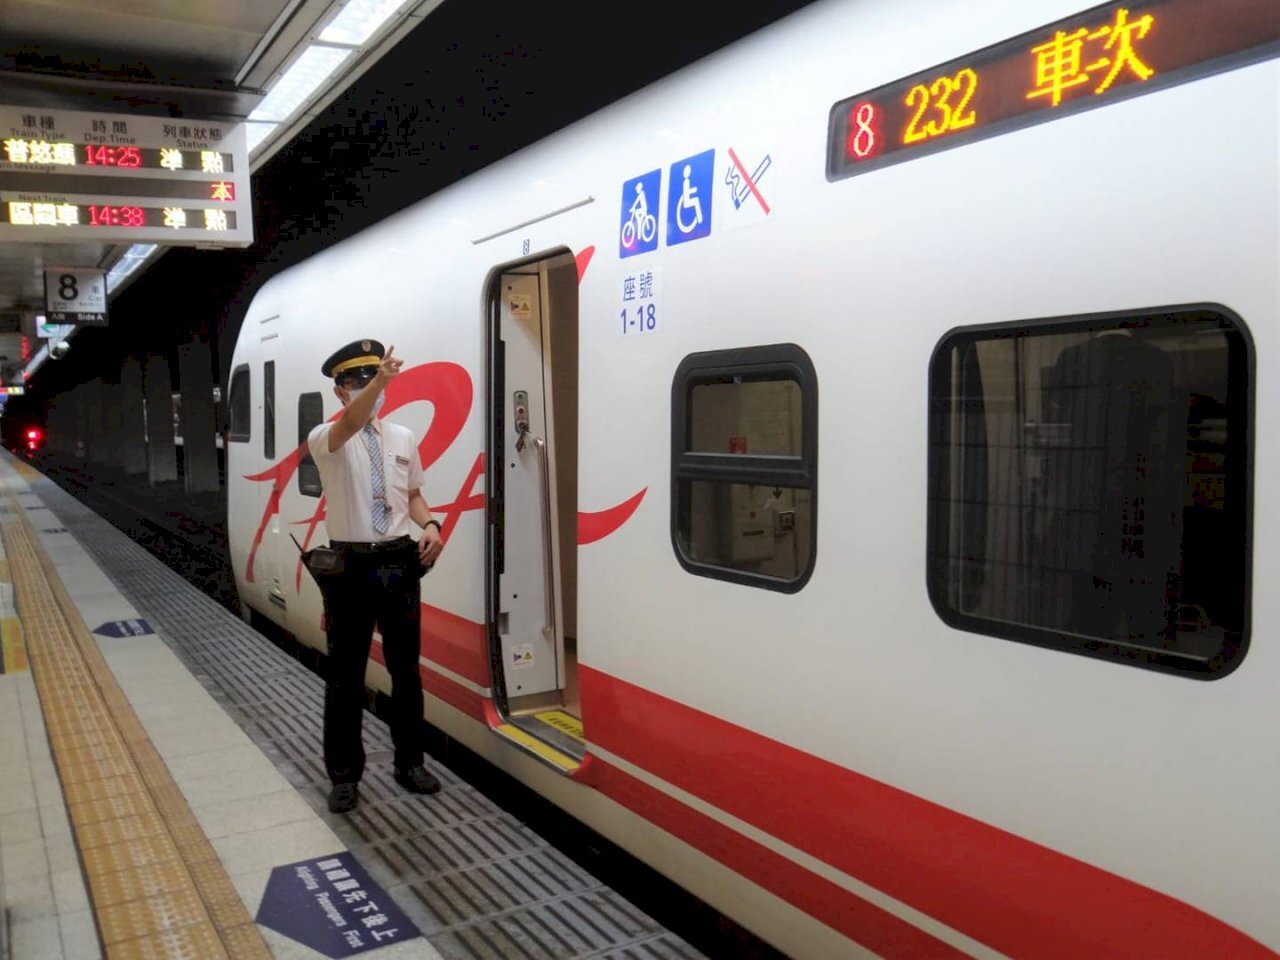 Ngành đường sắt Đài Loan đã lên kế hoạch nhanh nhất là vào quý 1 năm sau, phí chuyển phát đồ thất lạc sẽ được áp dụng như phí chuyển phát bưu kiện thông thường, mức tối thiểu là 34 Đài tệ. (Nguồn ảnh: Cục Quản lý Đường sắt Đài Loan cung cấp)